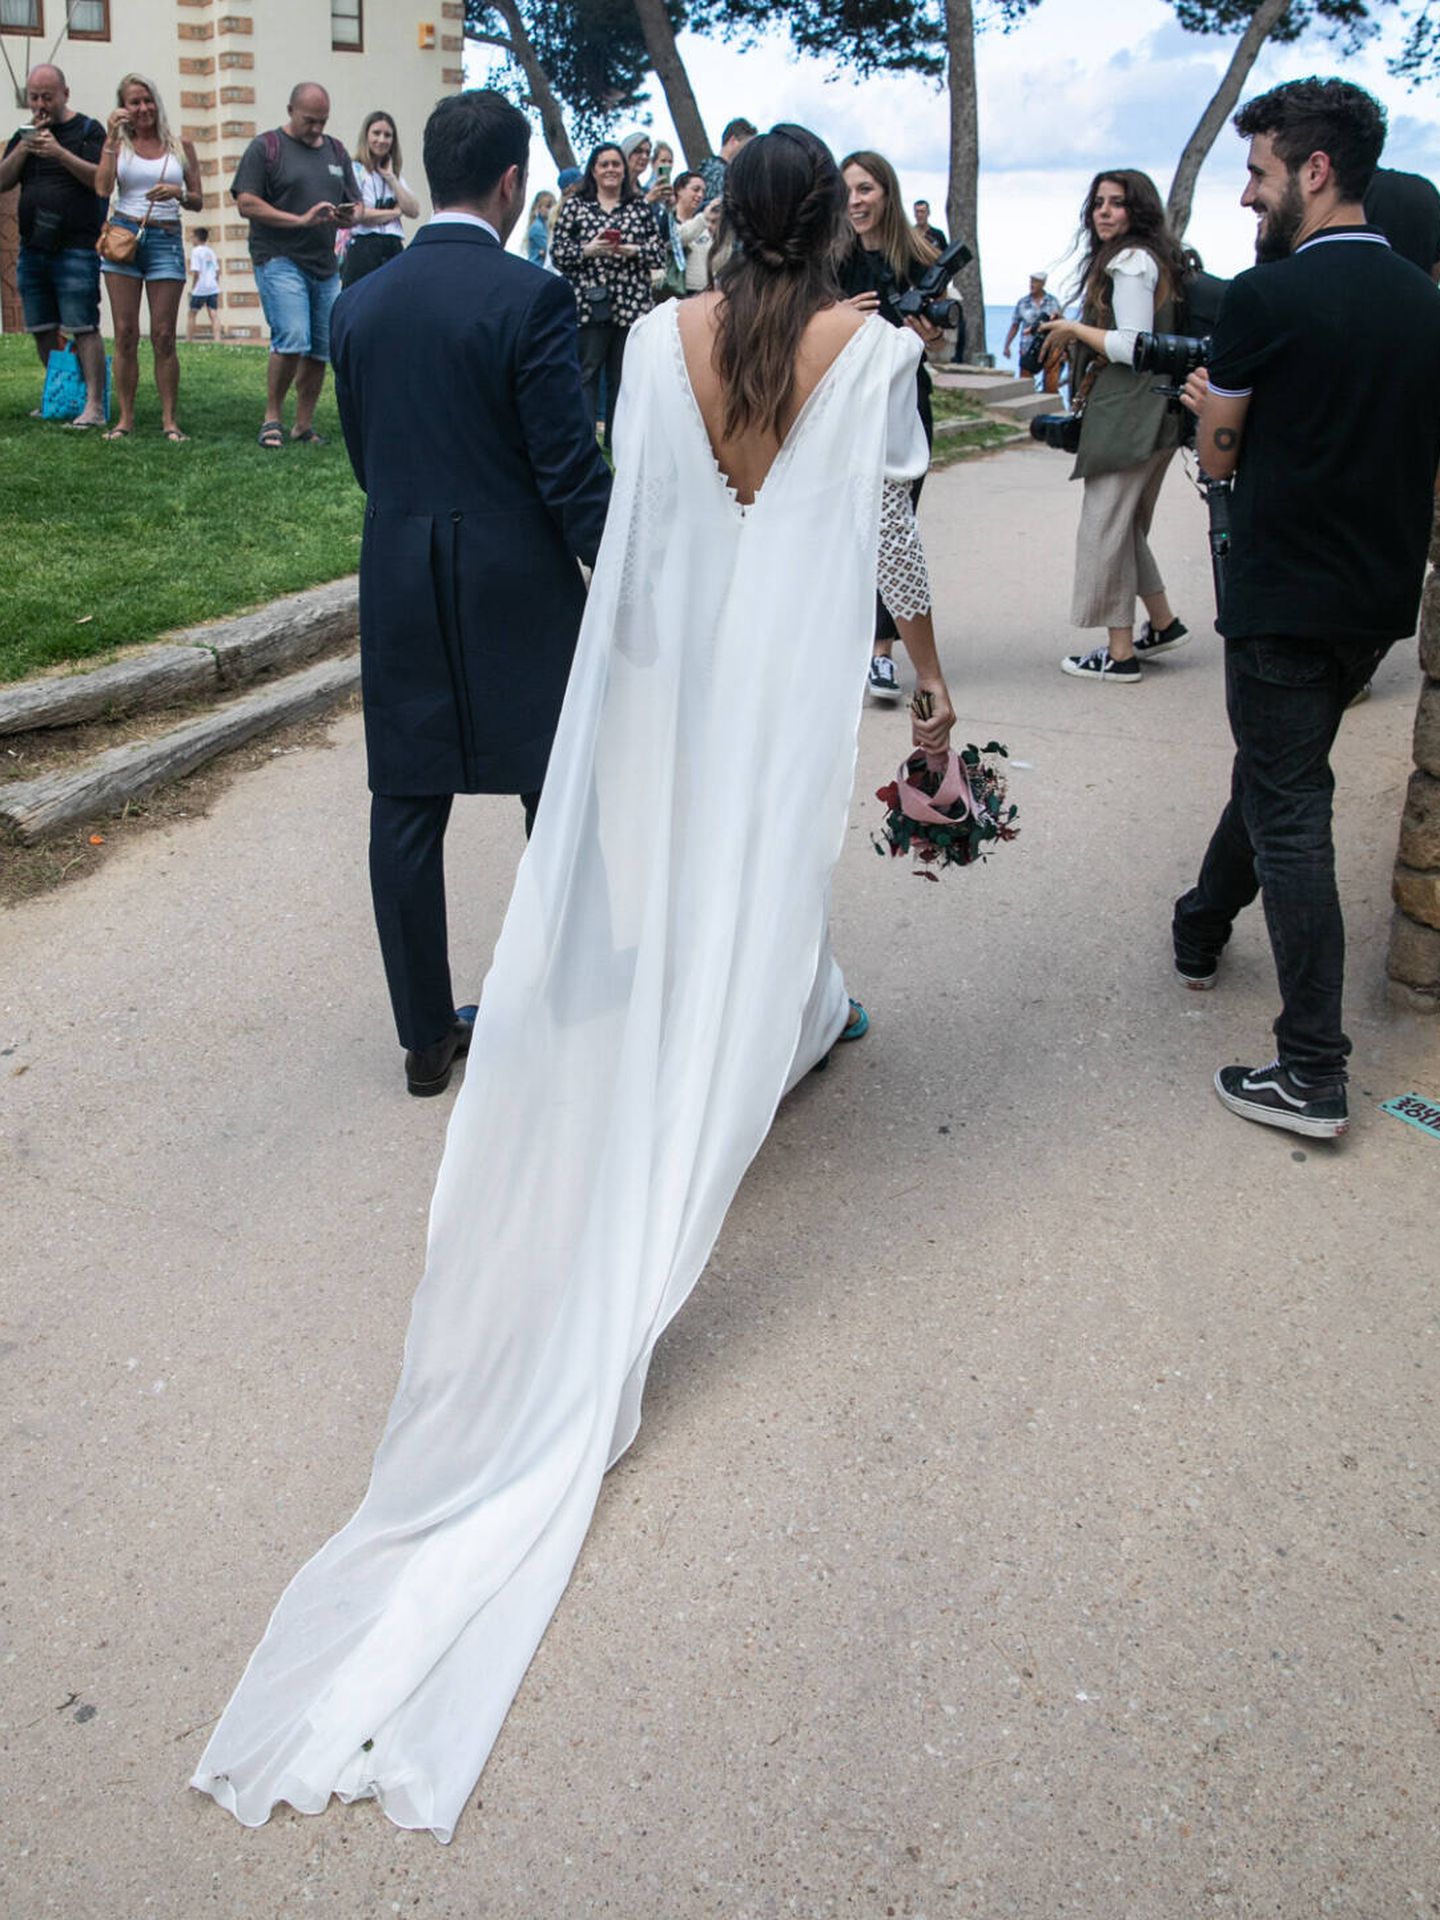 Detalle de la capa del vestido de novia. (Gtres)